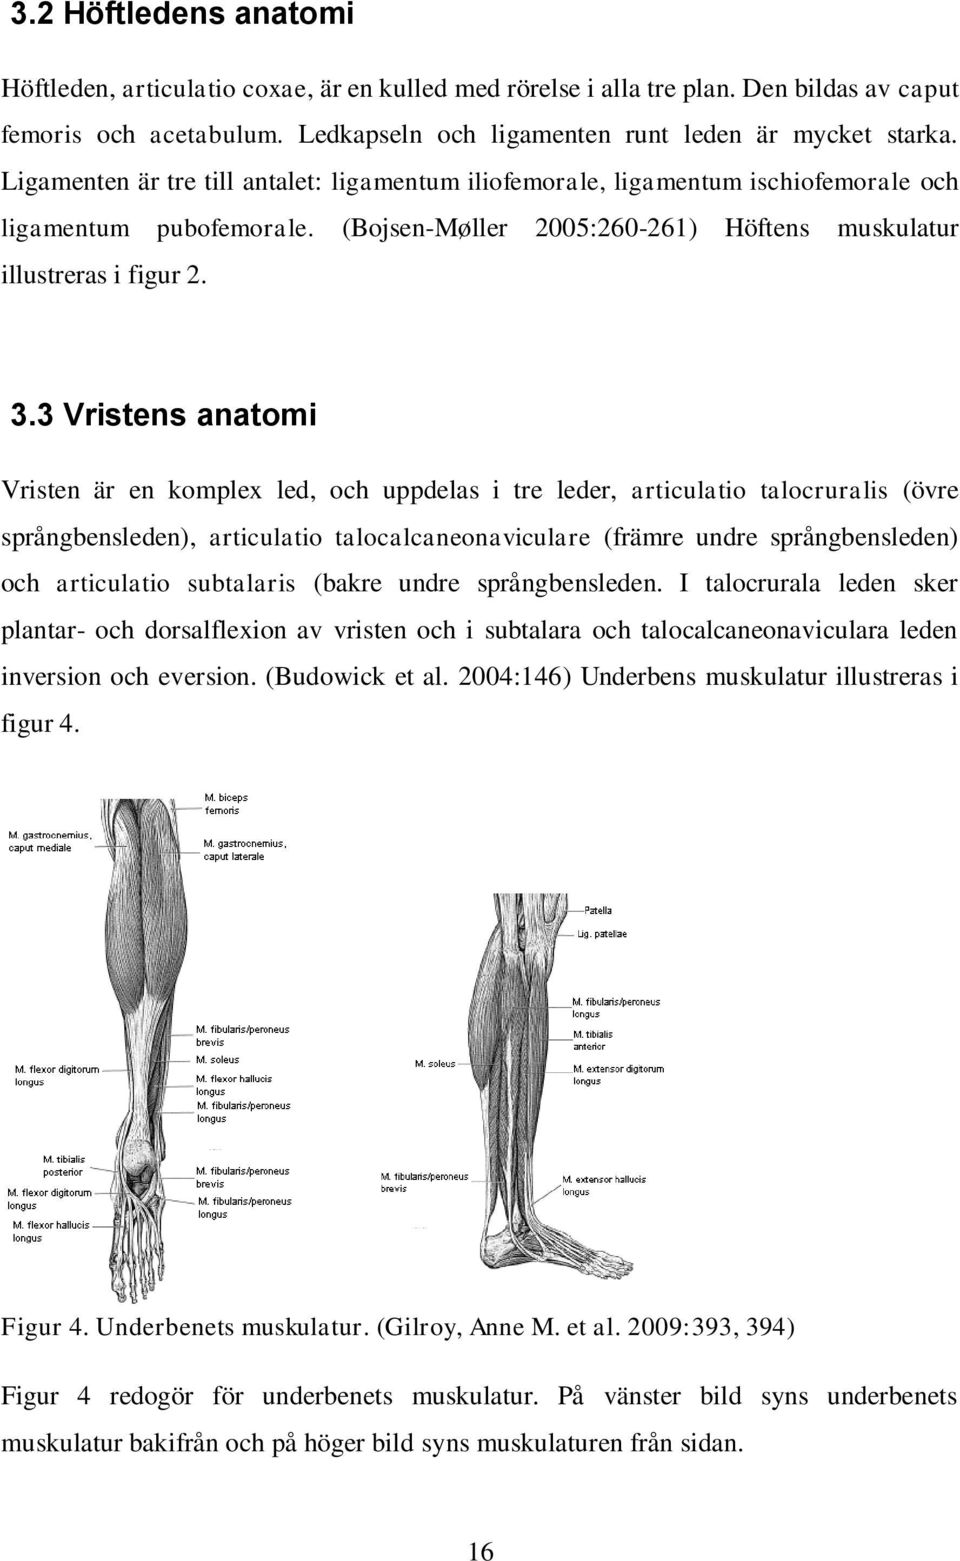 3 Vristens anatomi Vristen är en komplex led, och uppdelas i tre leder, articulatio talocruralis (övre språngbensleden), articulatio talocalcaneonaviculare (främre undre språngbensleden) och